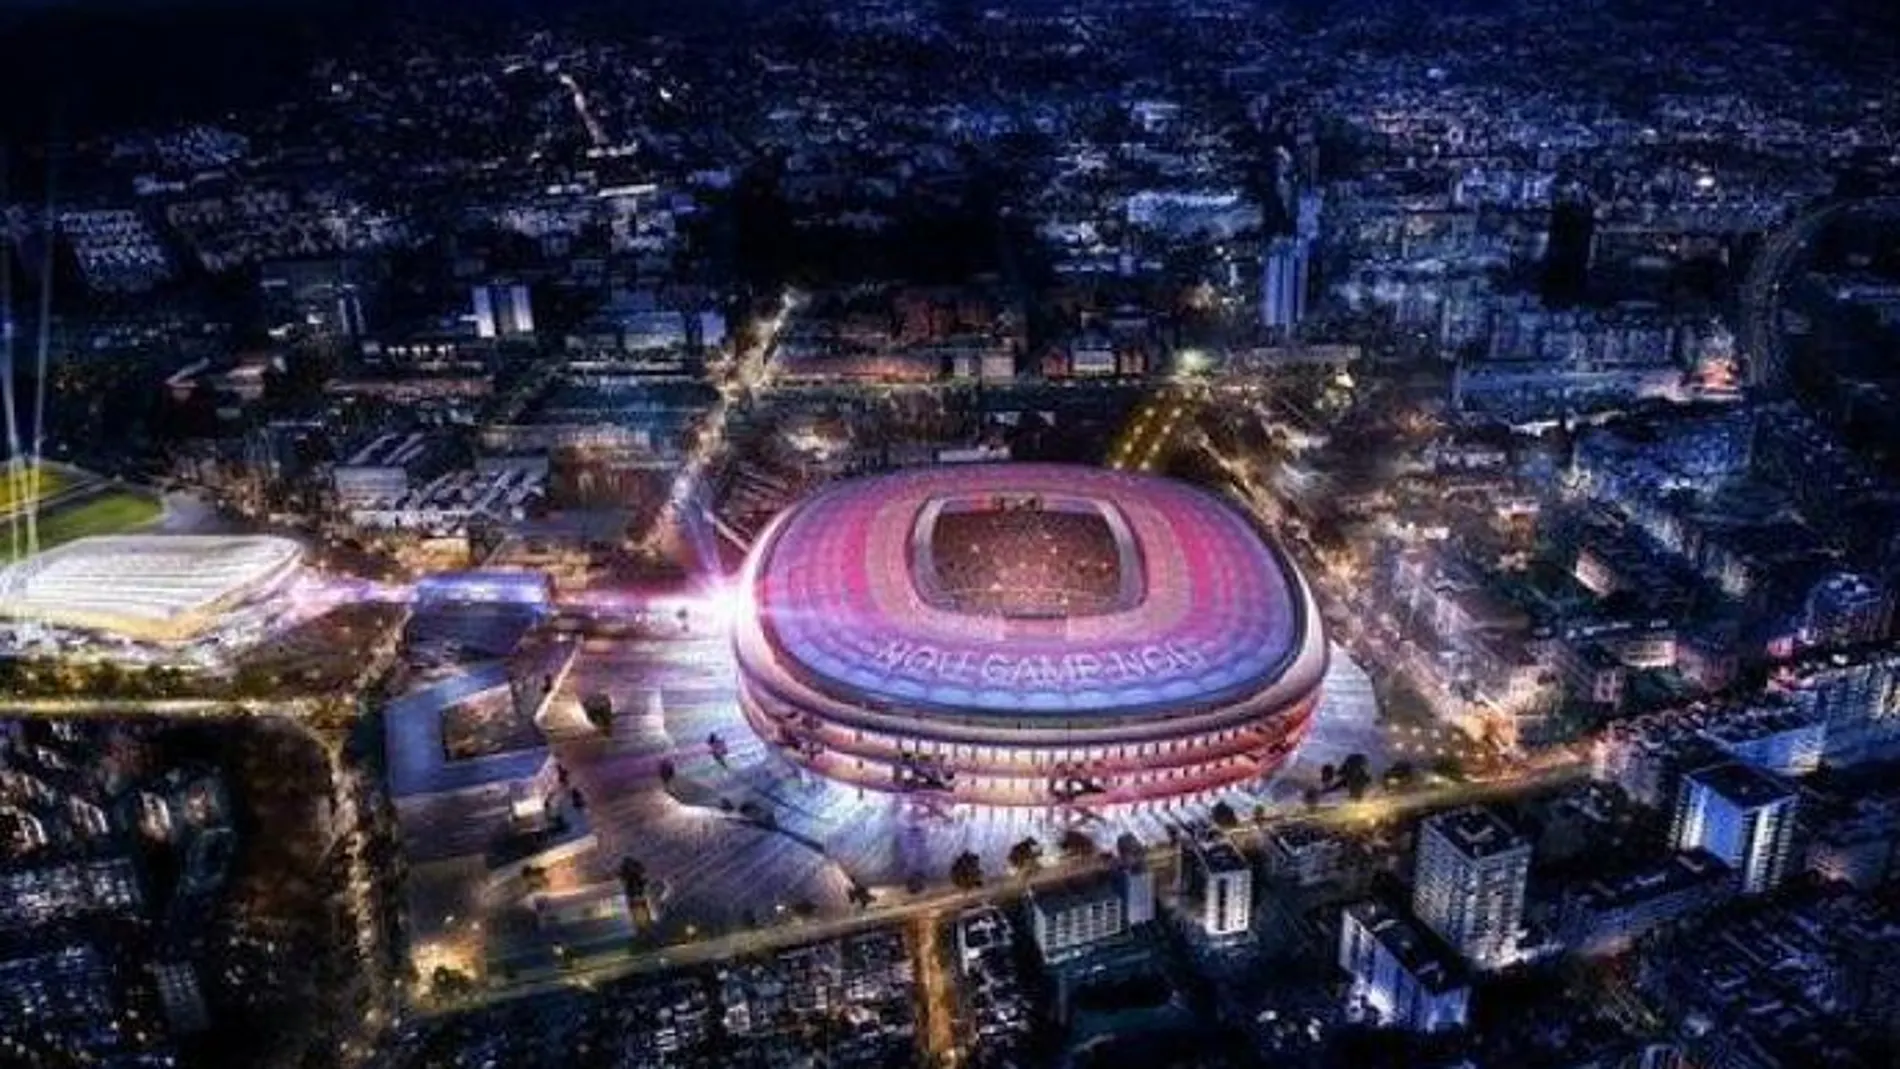 El proyecto del nuevo Camp Nou